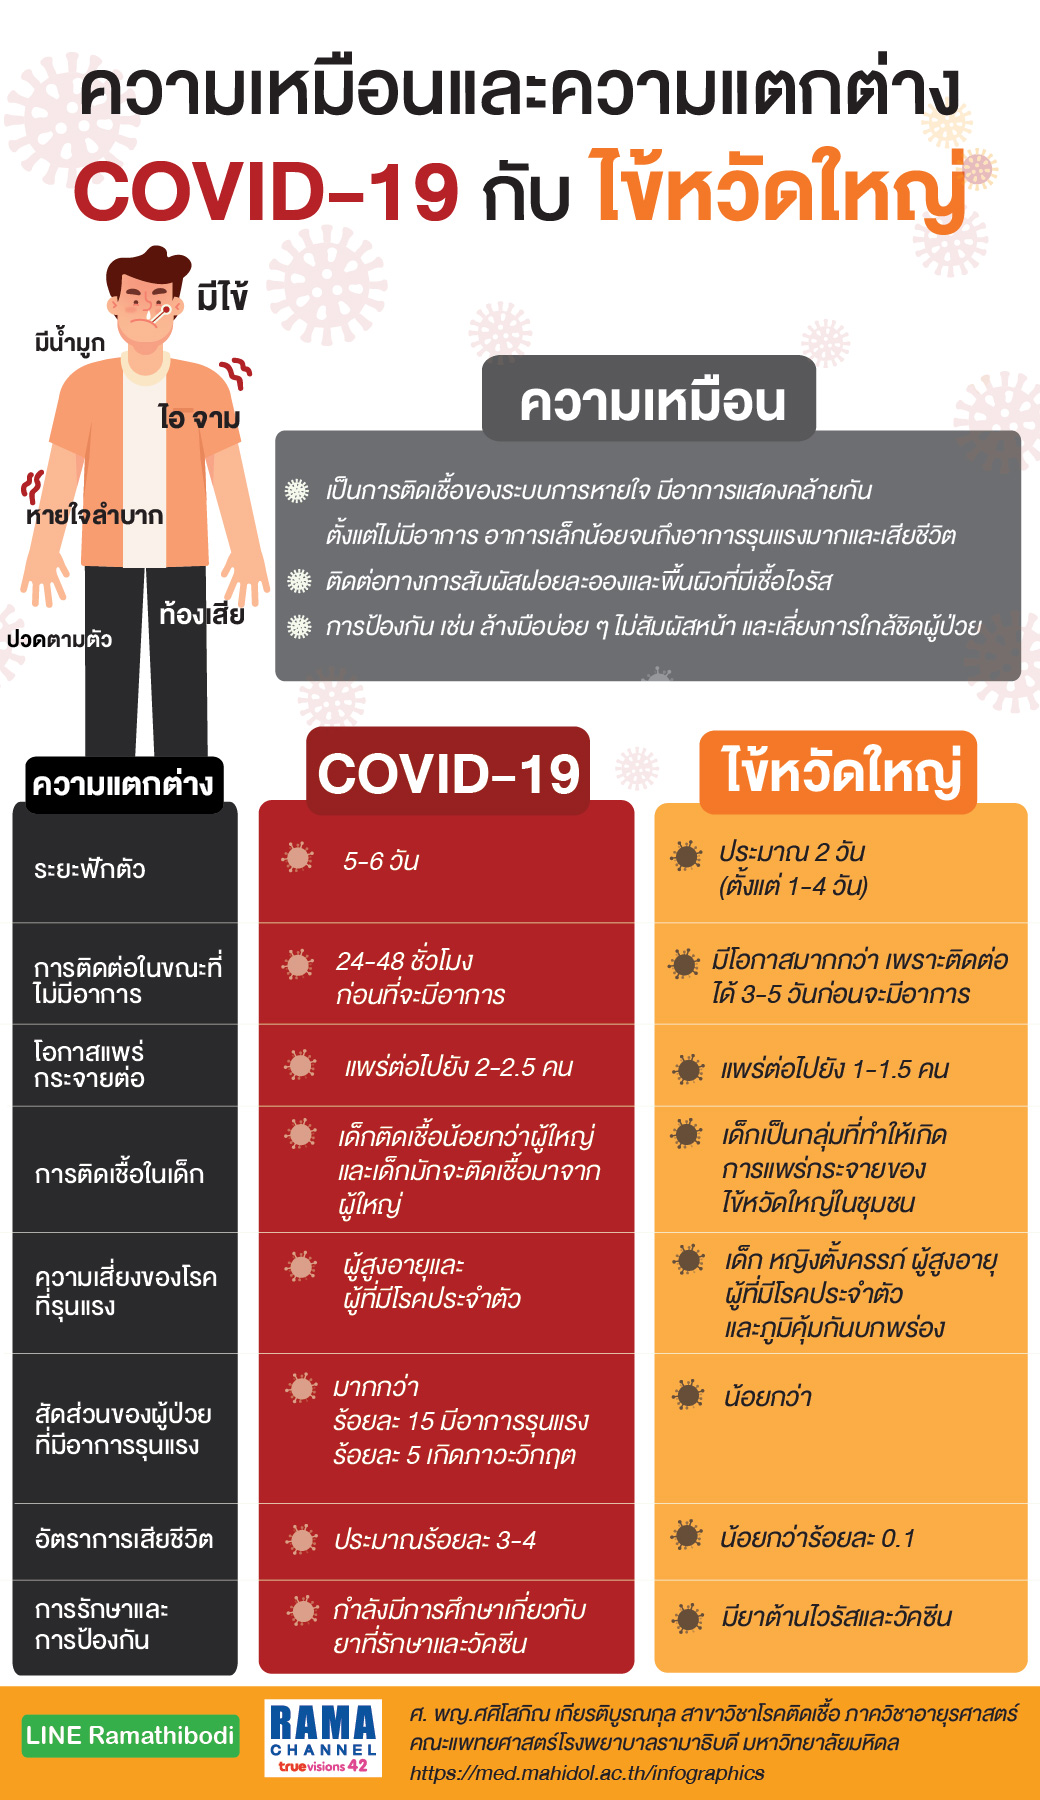 ความเหมือนและความแตกต่าง COVID-19 กับ ไข้หวัดใหญ่